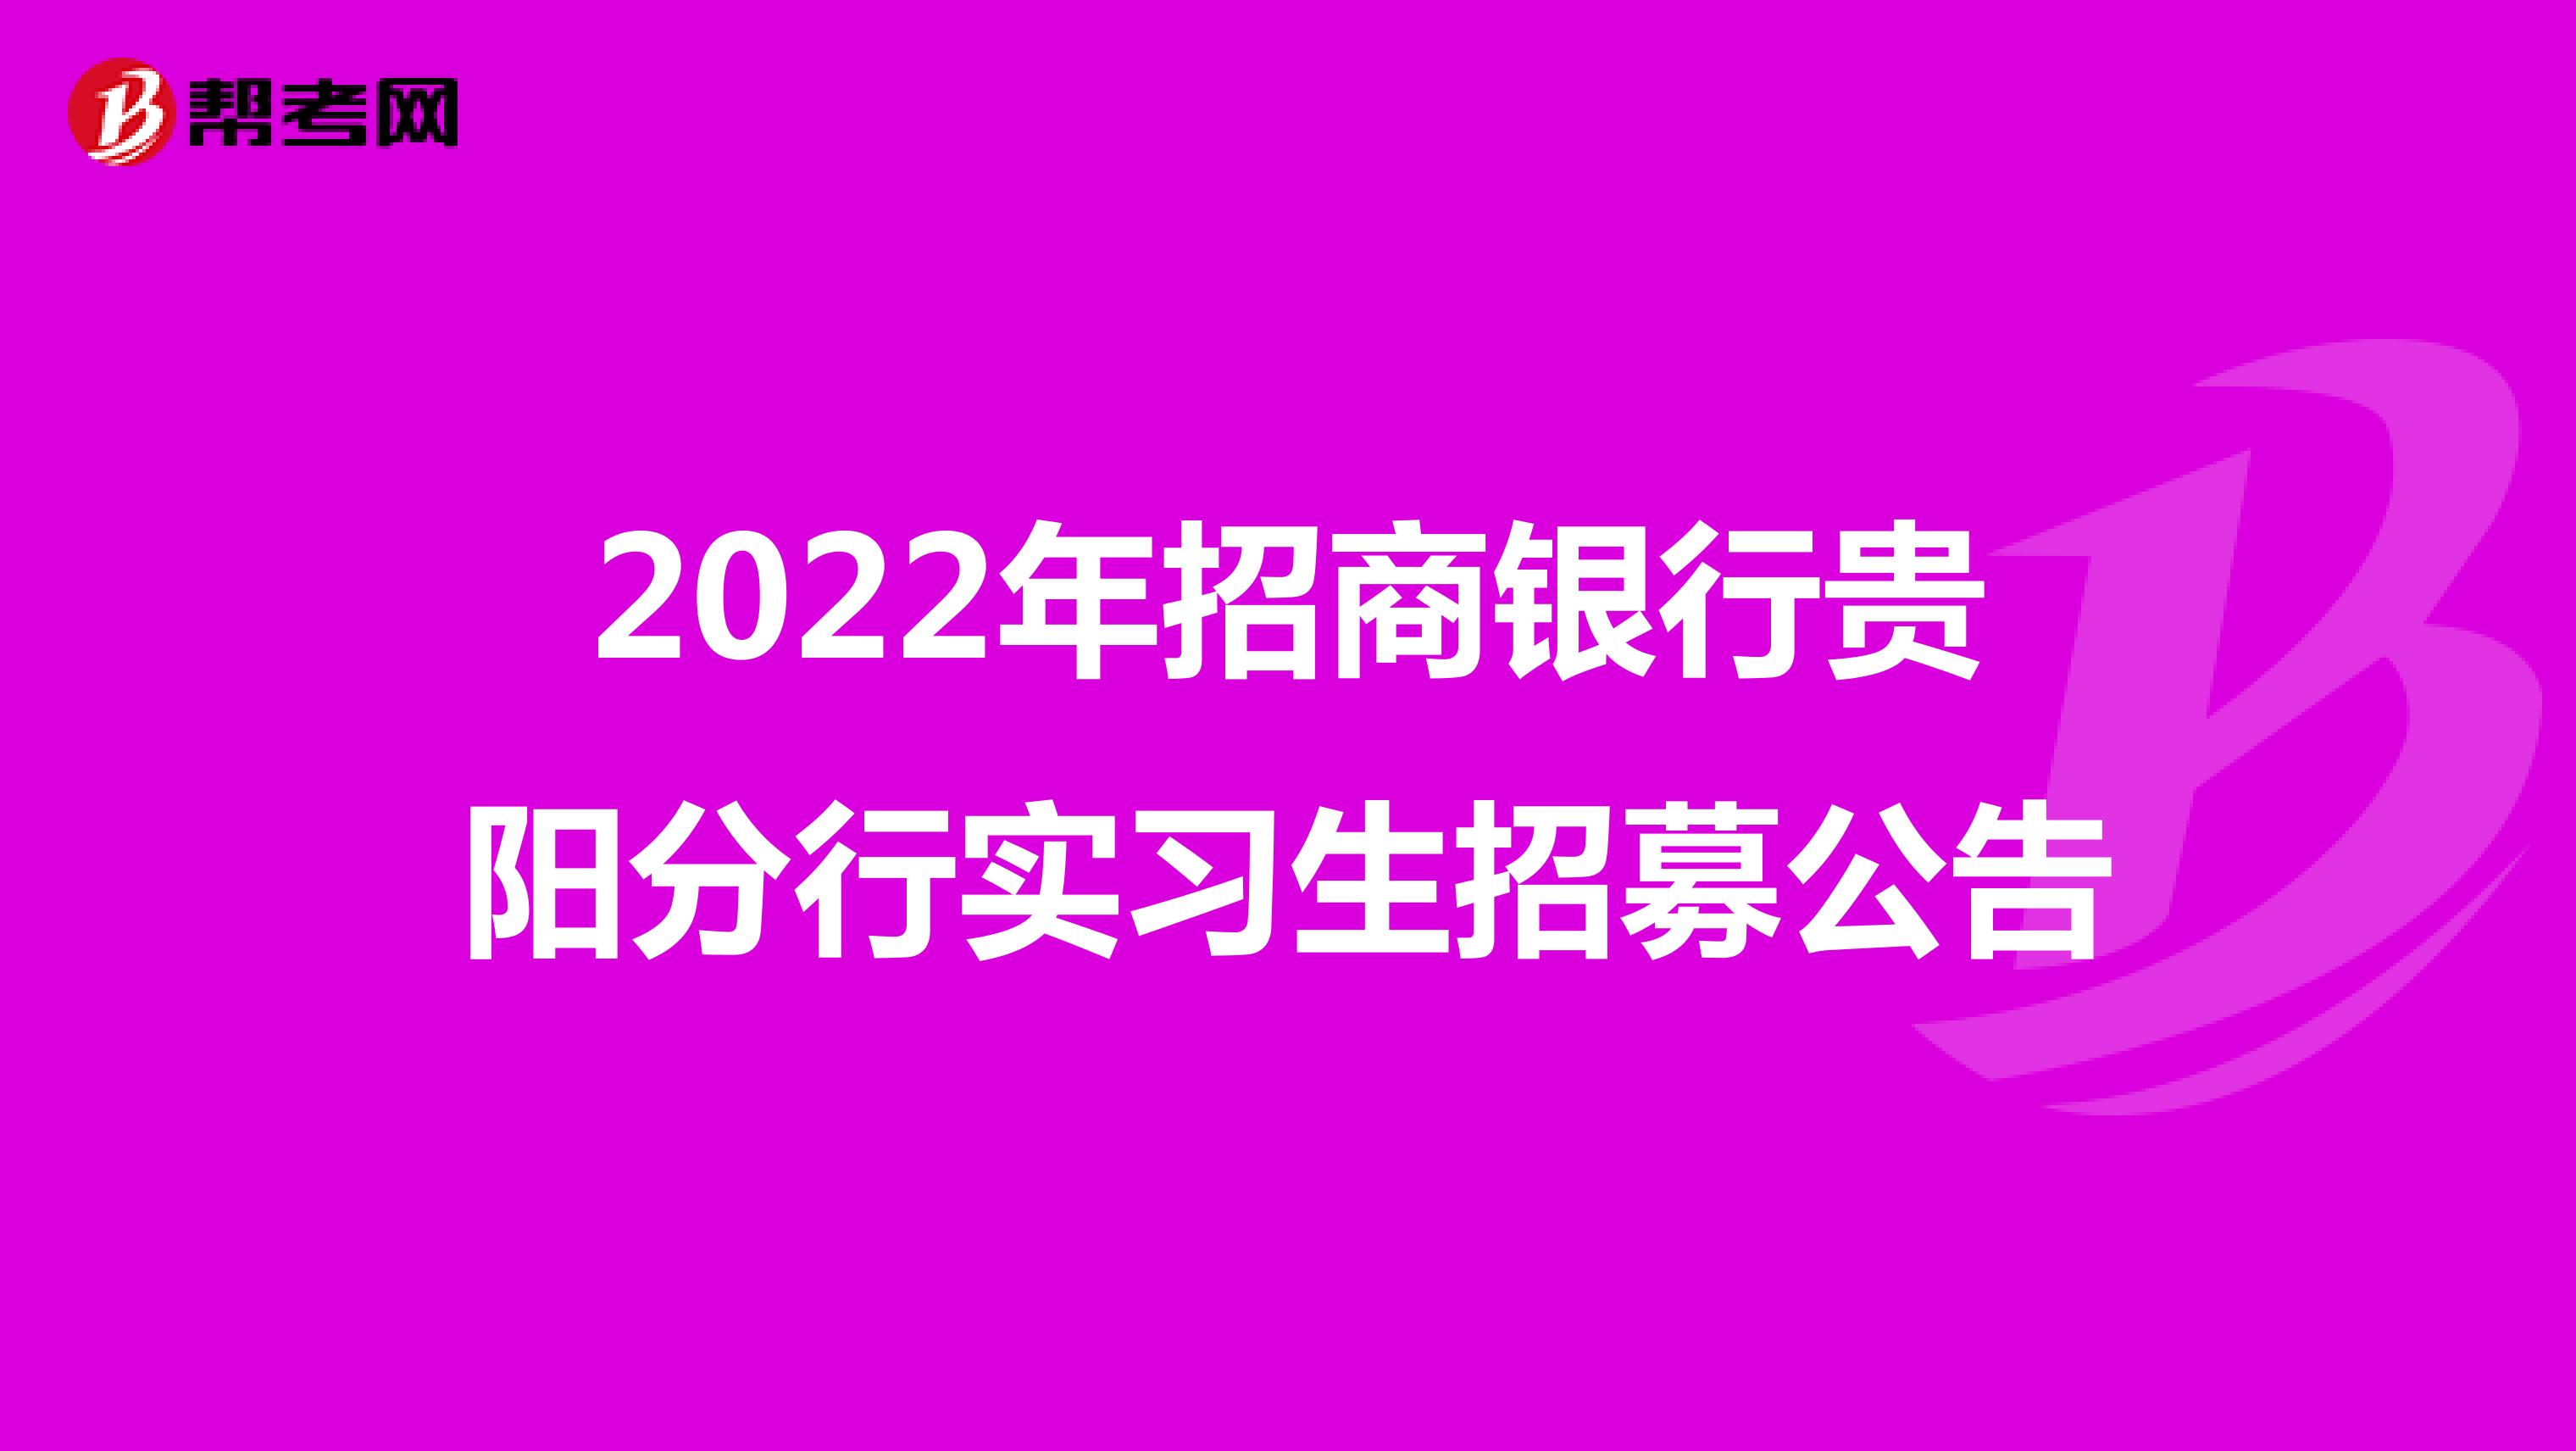 2022年招商銀行貴陽分行實習生招募公告